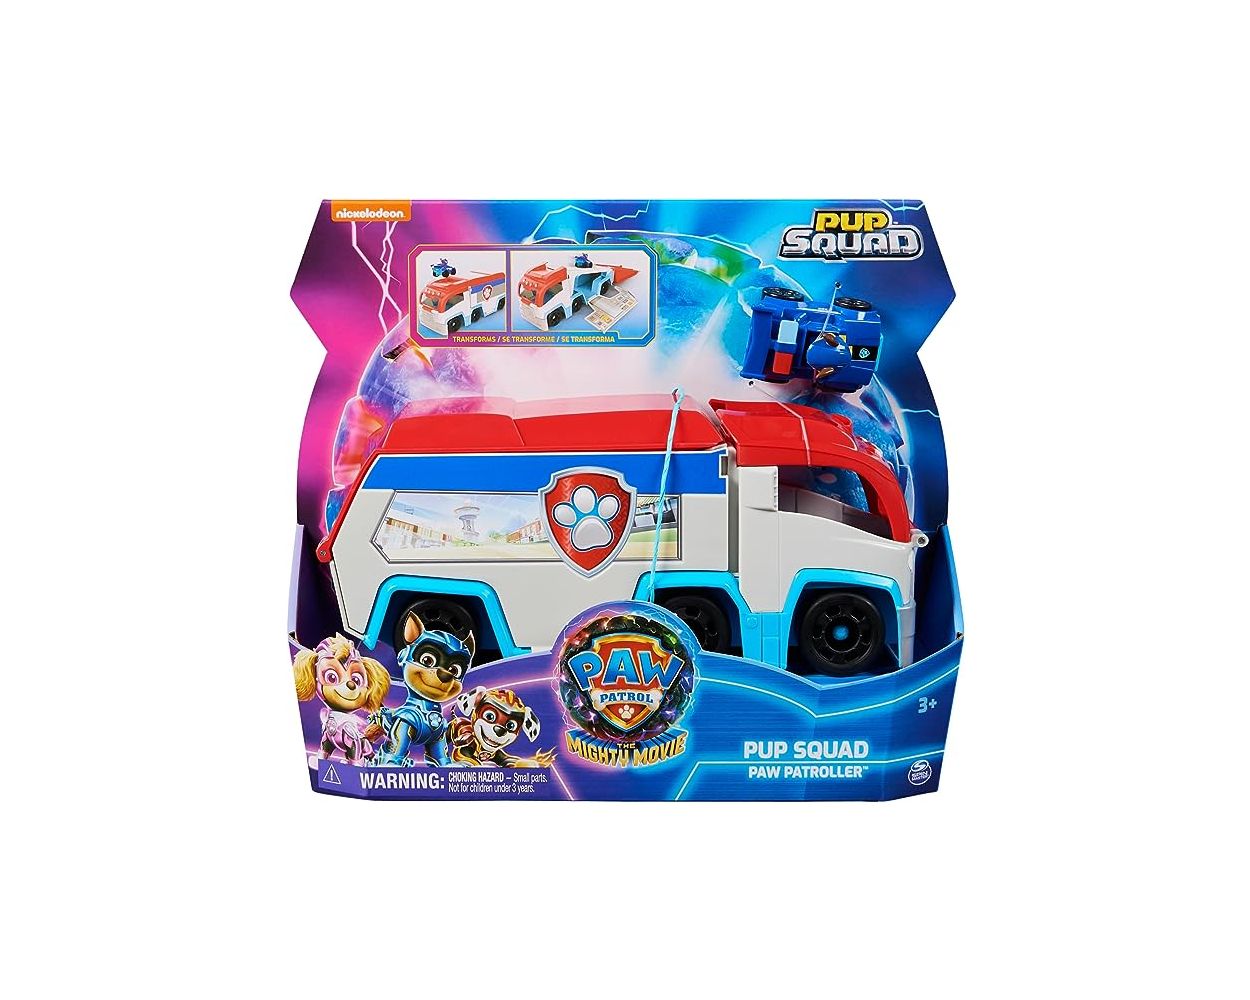 Paw Patrol The Mighty Movie camión de juguete